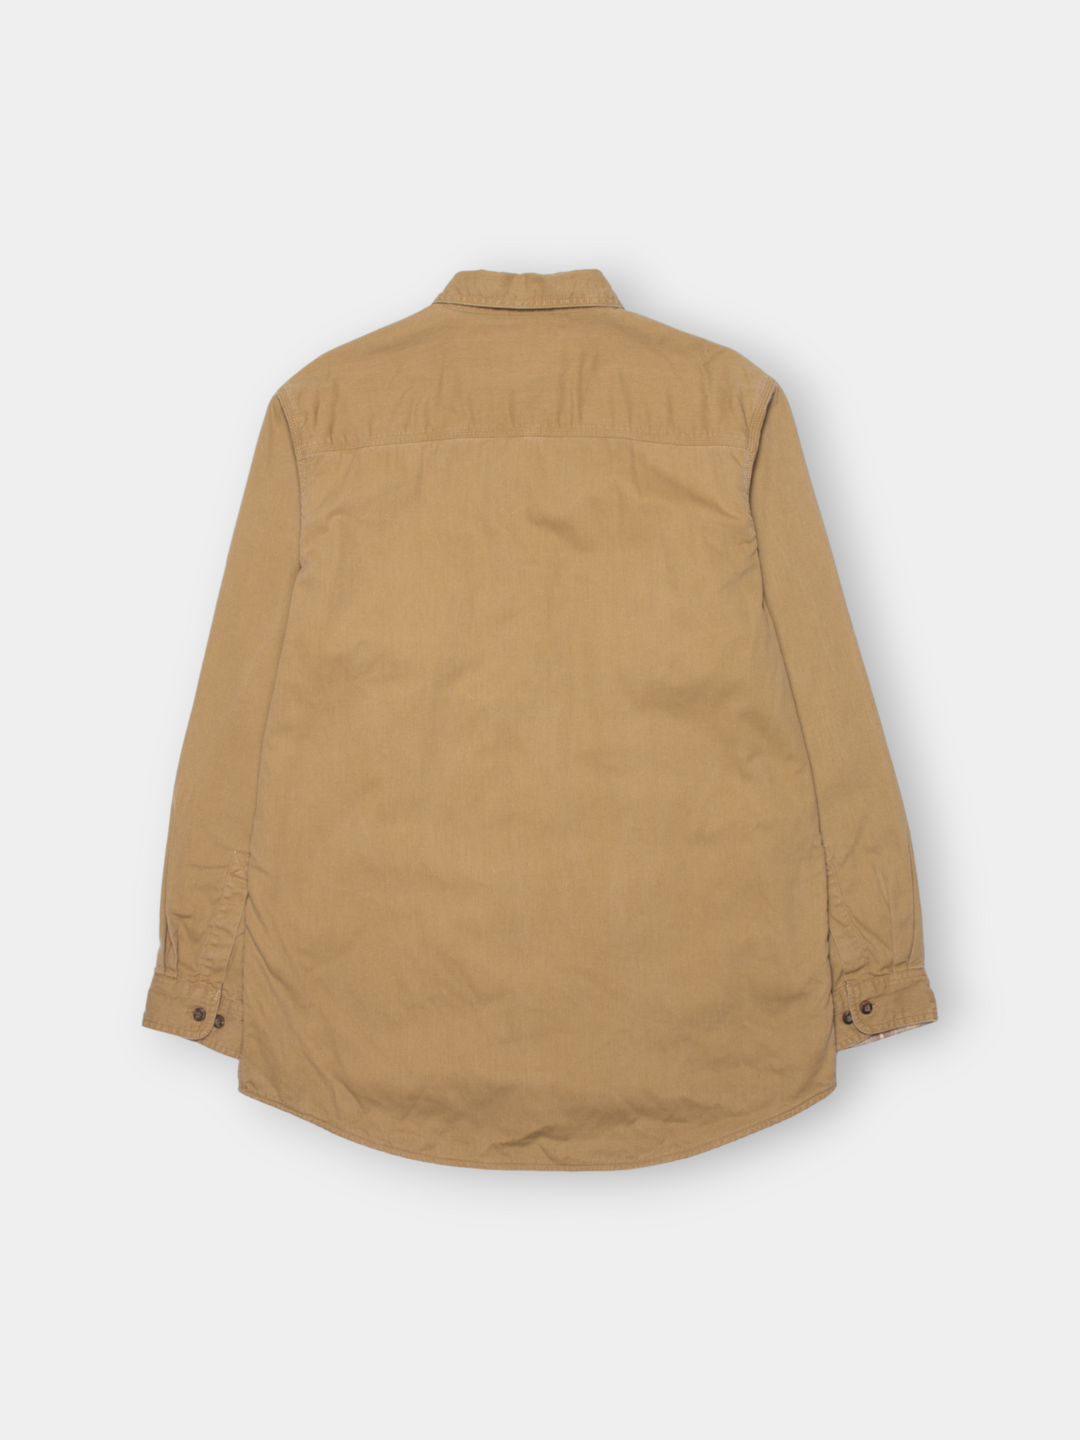 90s L.L. Bean Heavy Cotton Shirt (L)